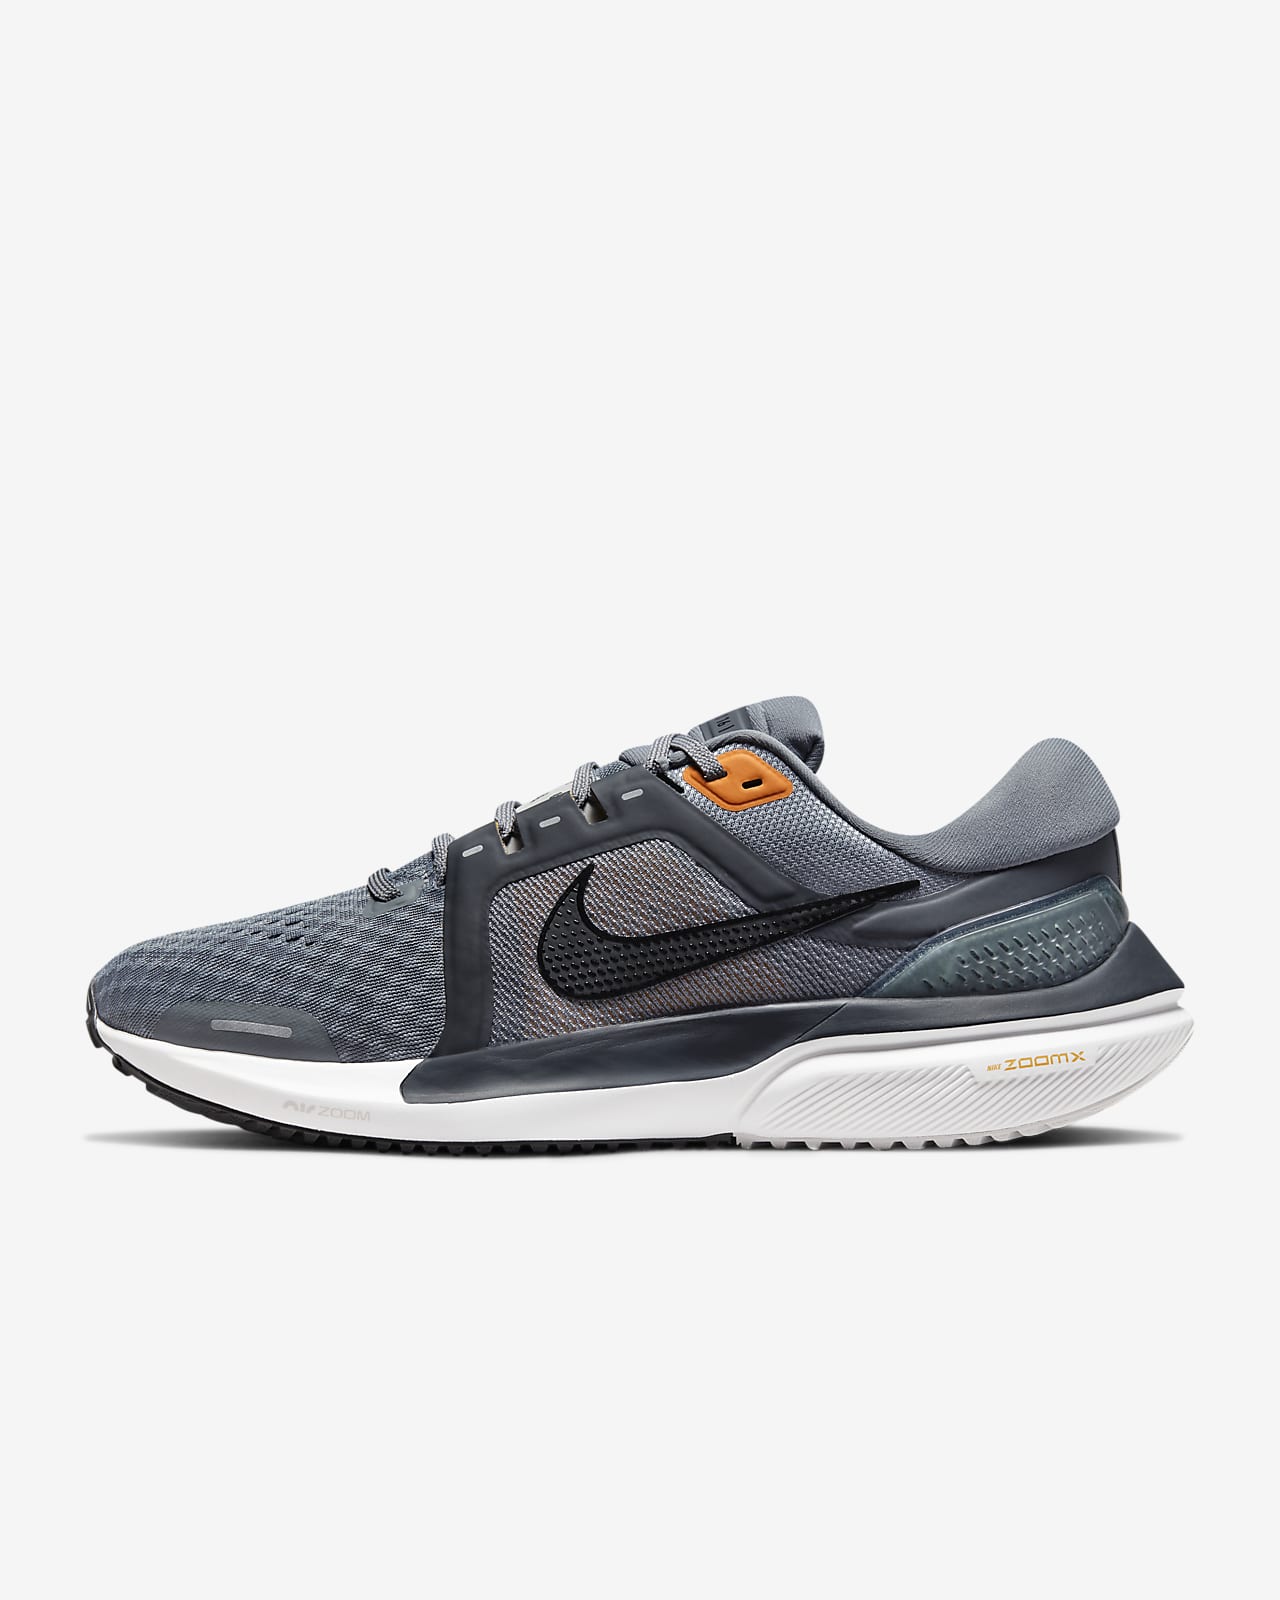 Ανδρικό παπούτσι για τρέξιμο σε δρόμο Nike Air Zoom Vomero 16